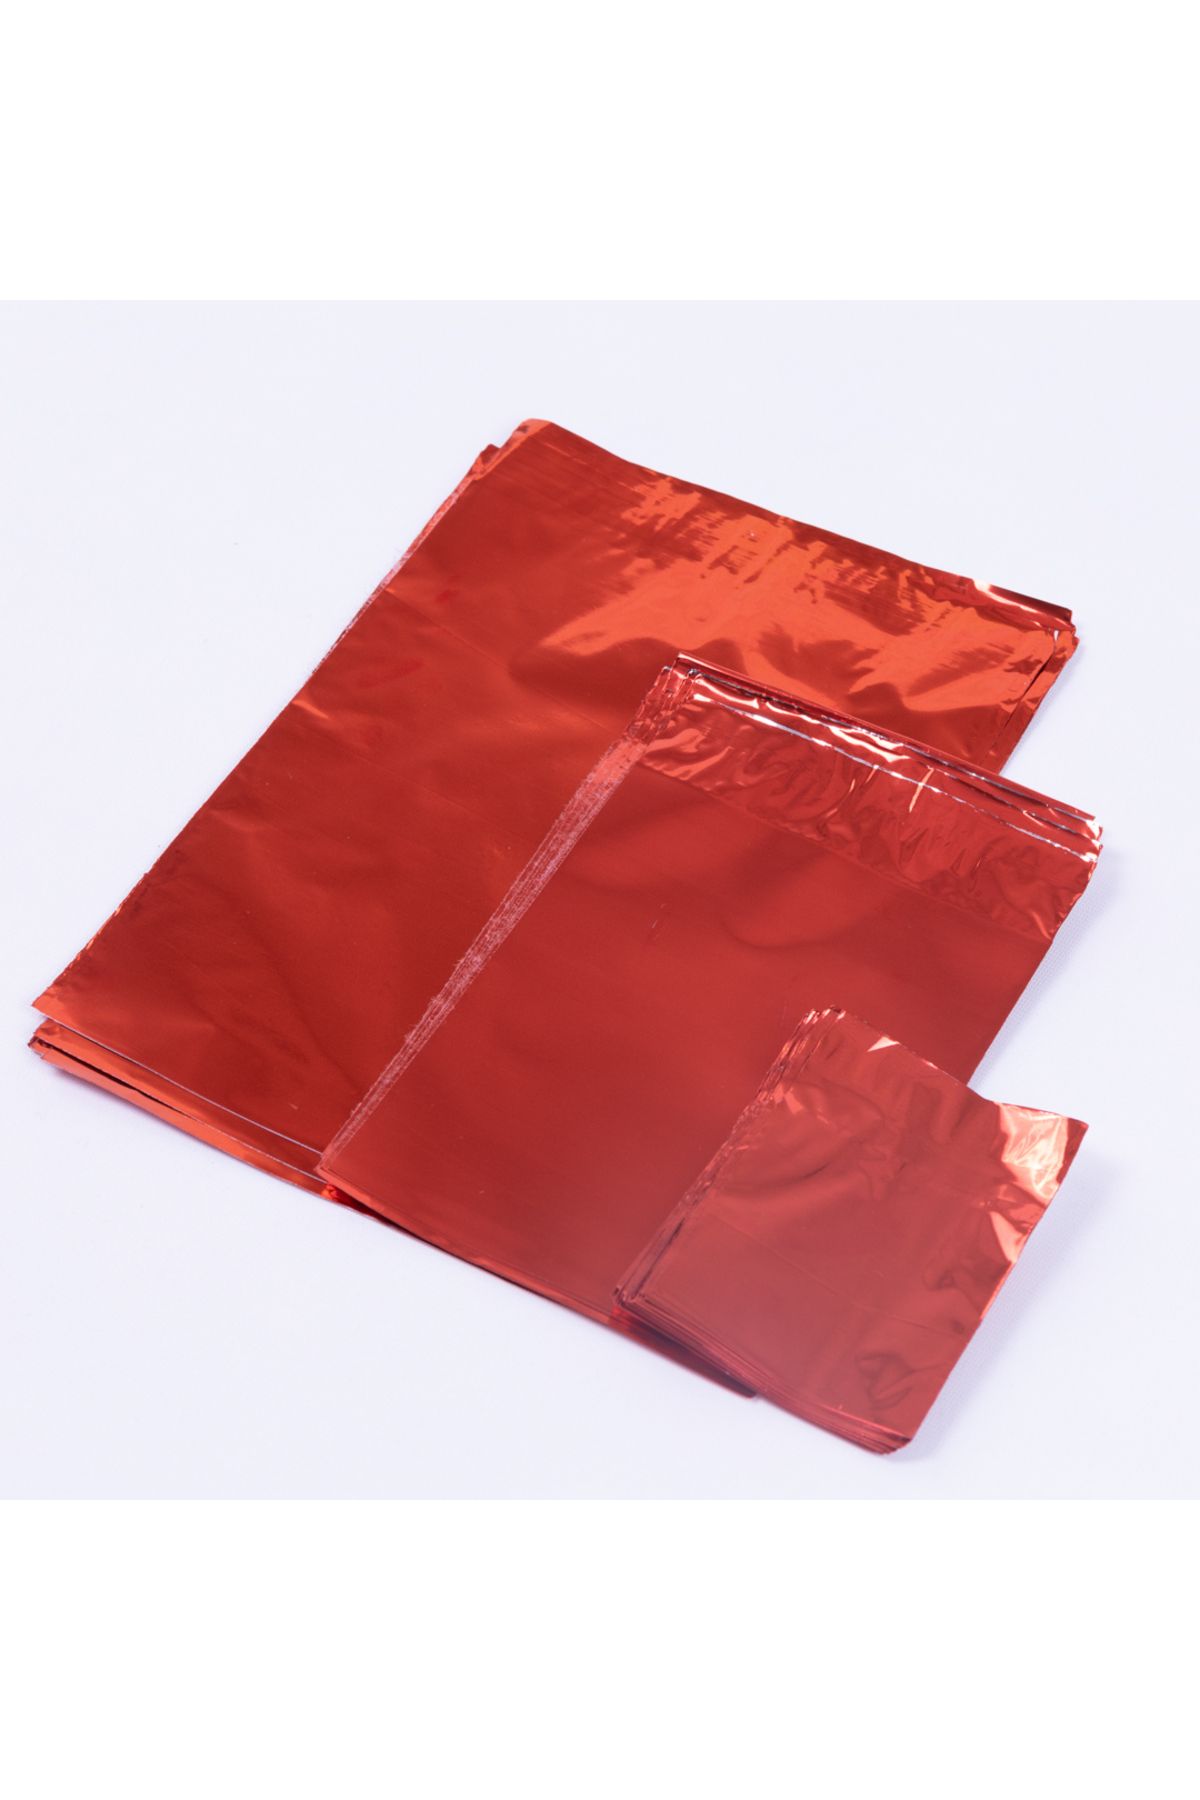 Bimotif Metalik özellikli poşet 25li, kırmızı 35x50 cm (1 adet)